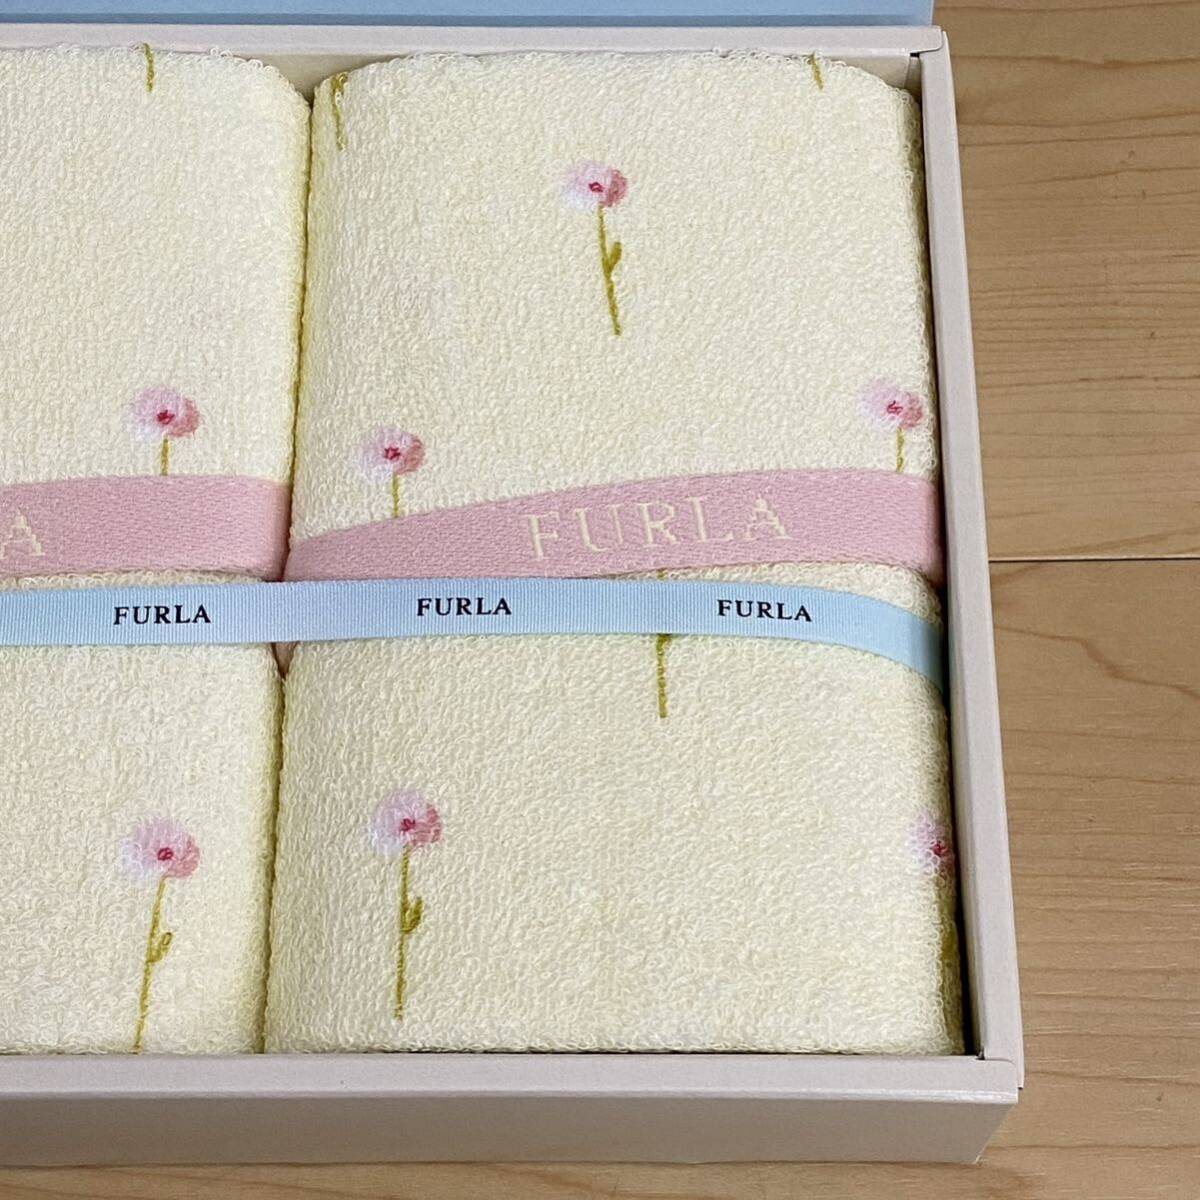 FURLA Furla face towel 2 sheets yellow floral print box none no.143